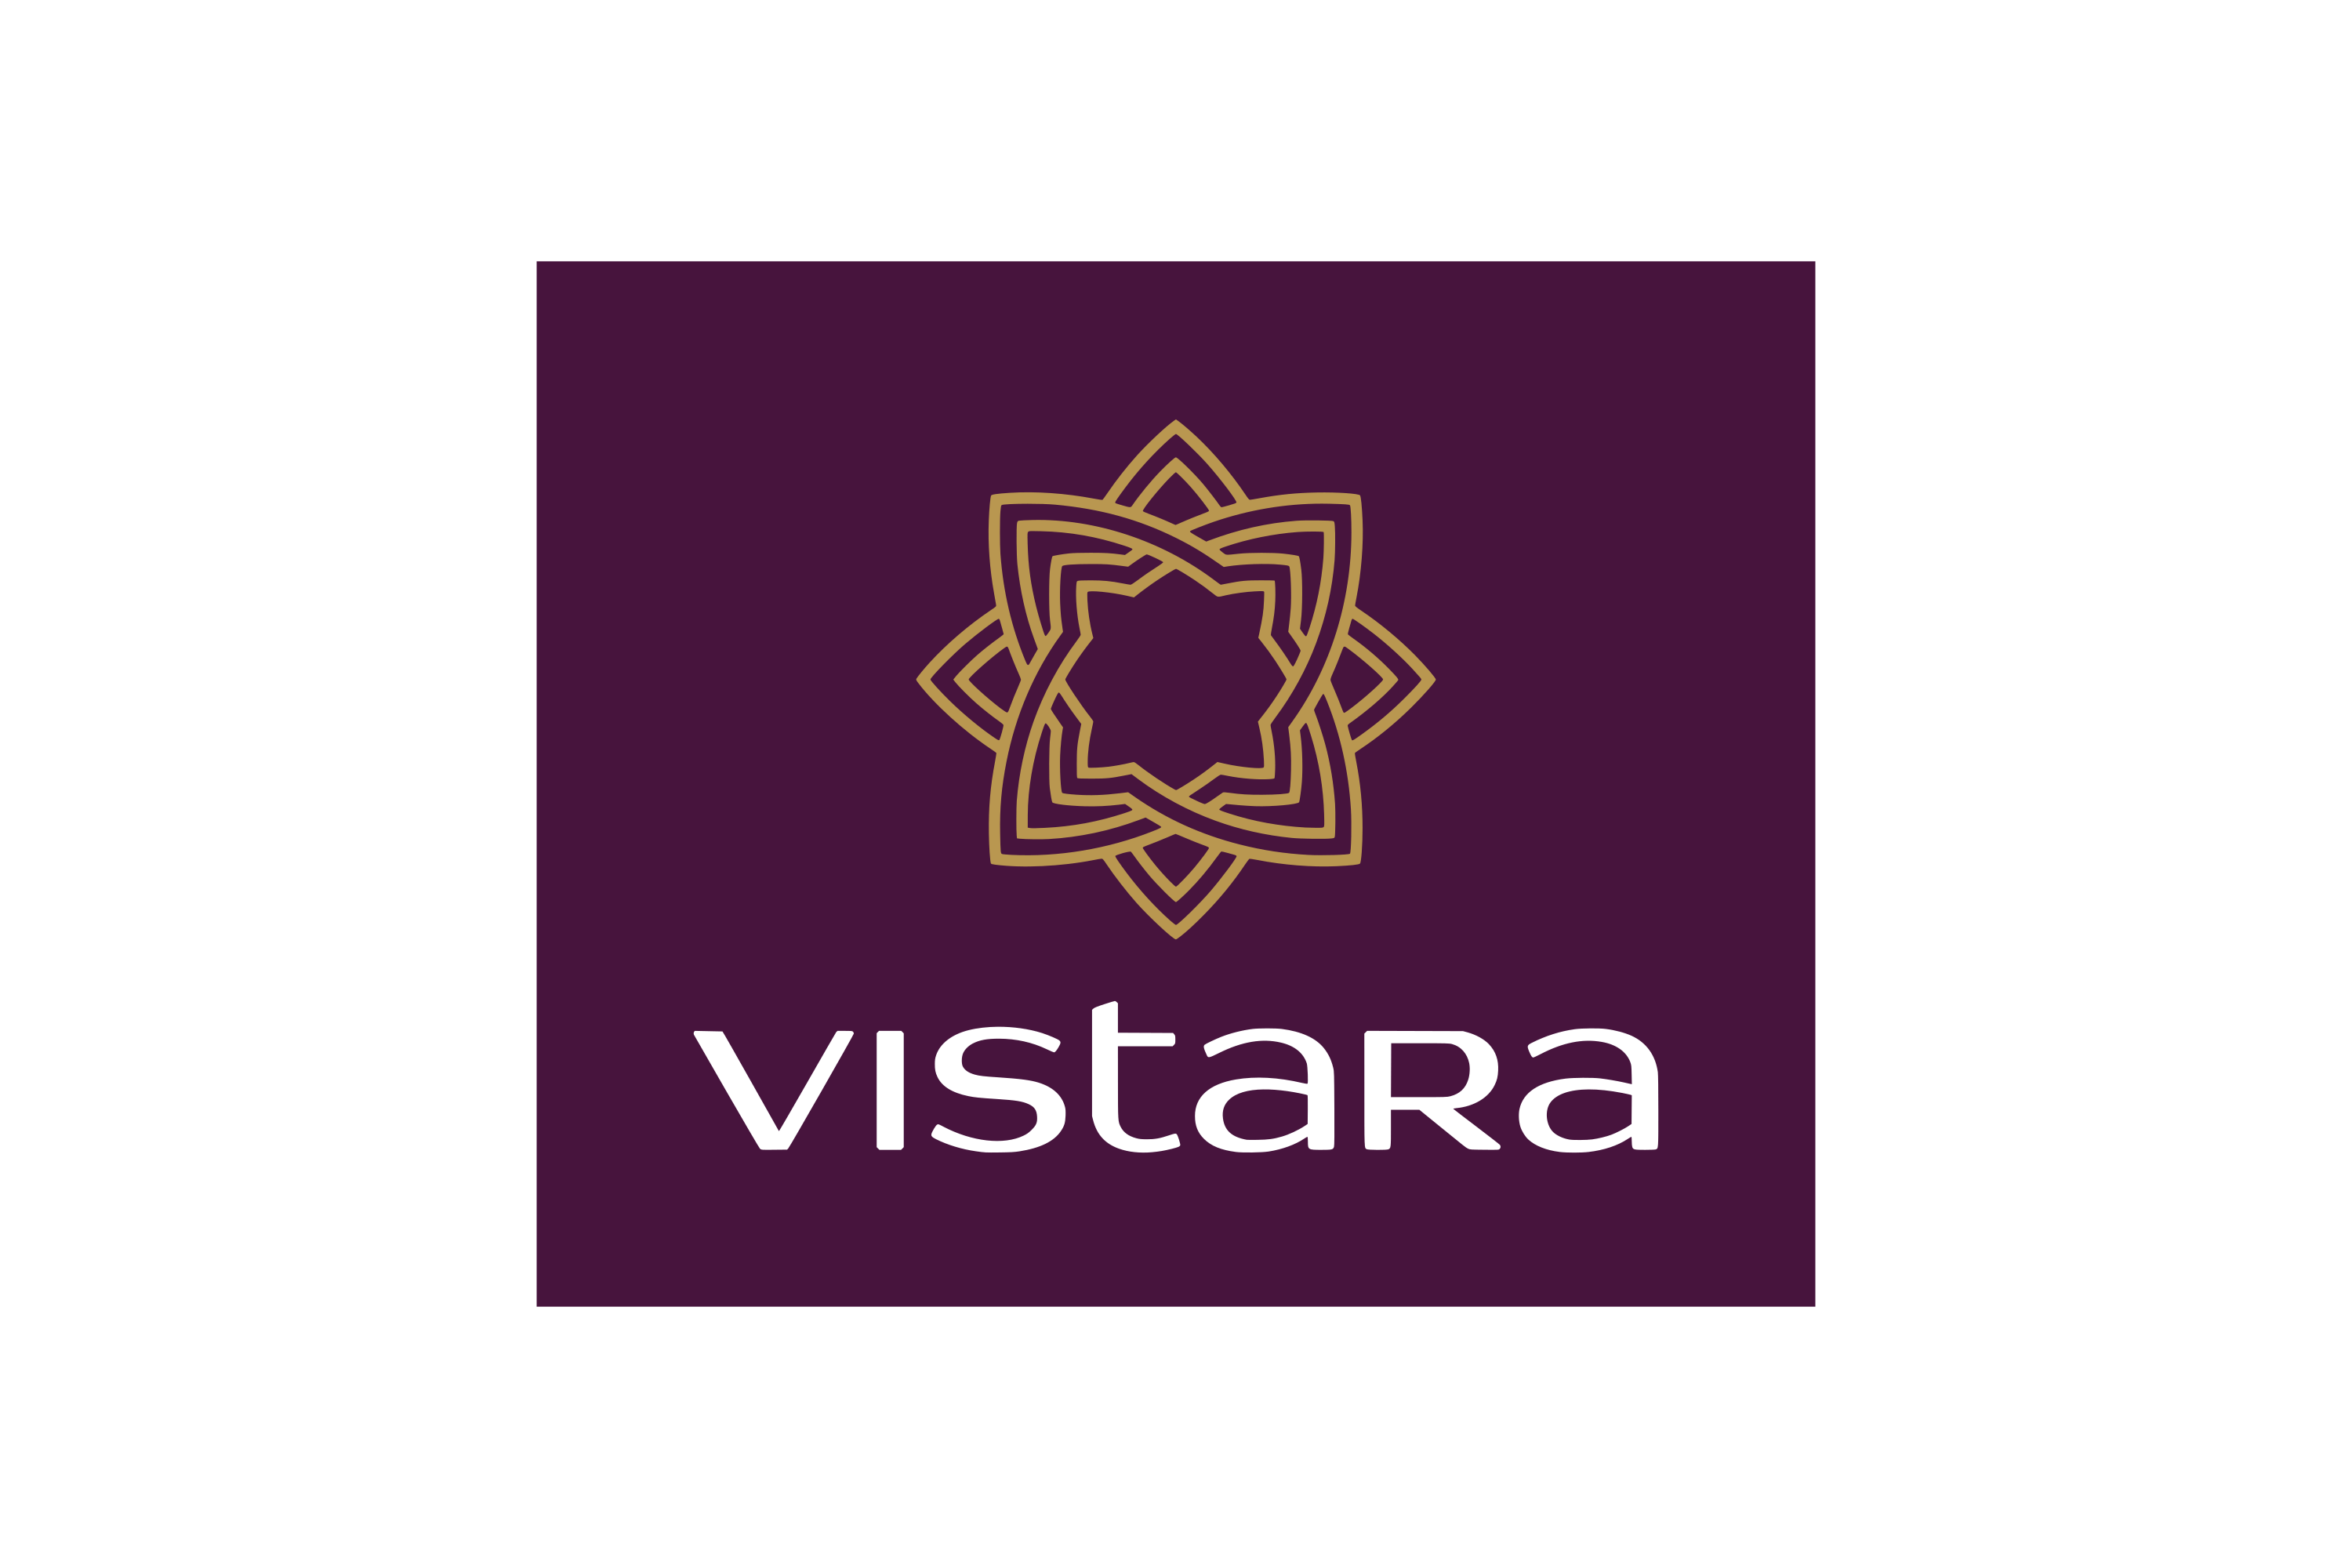 Download Vistara Logo in SVG Vector or PNG File Format - Logo.wine